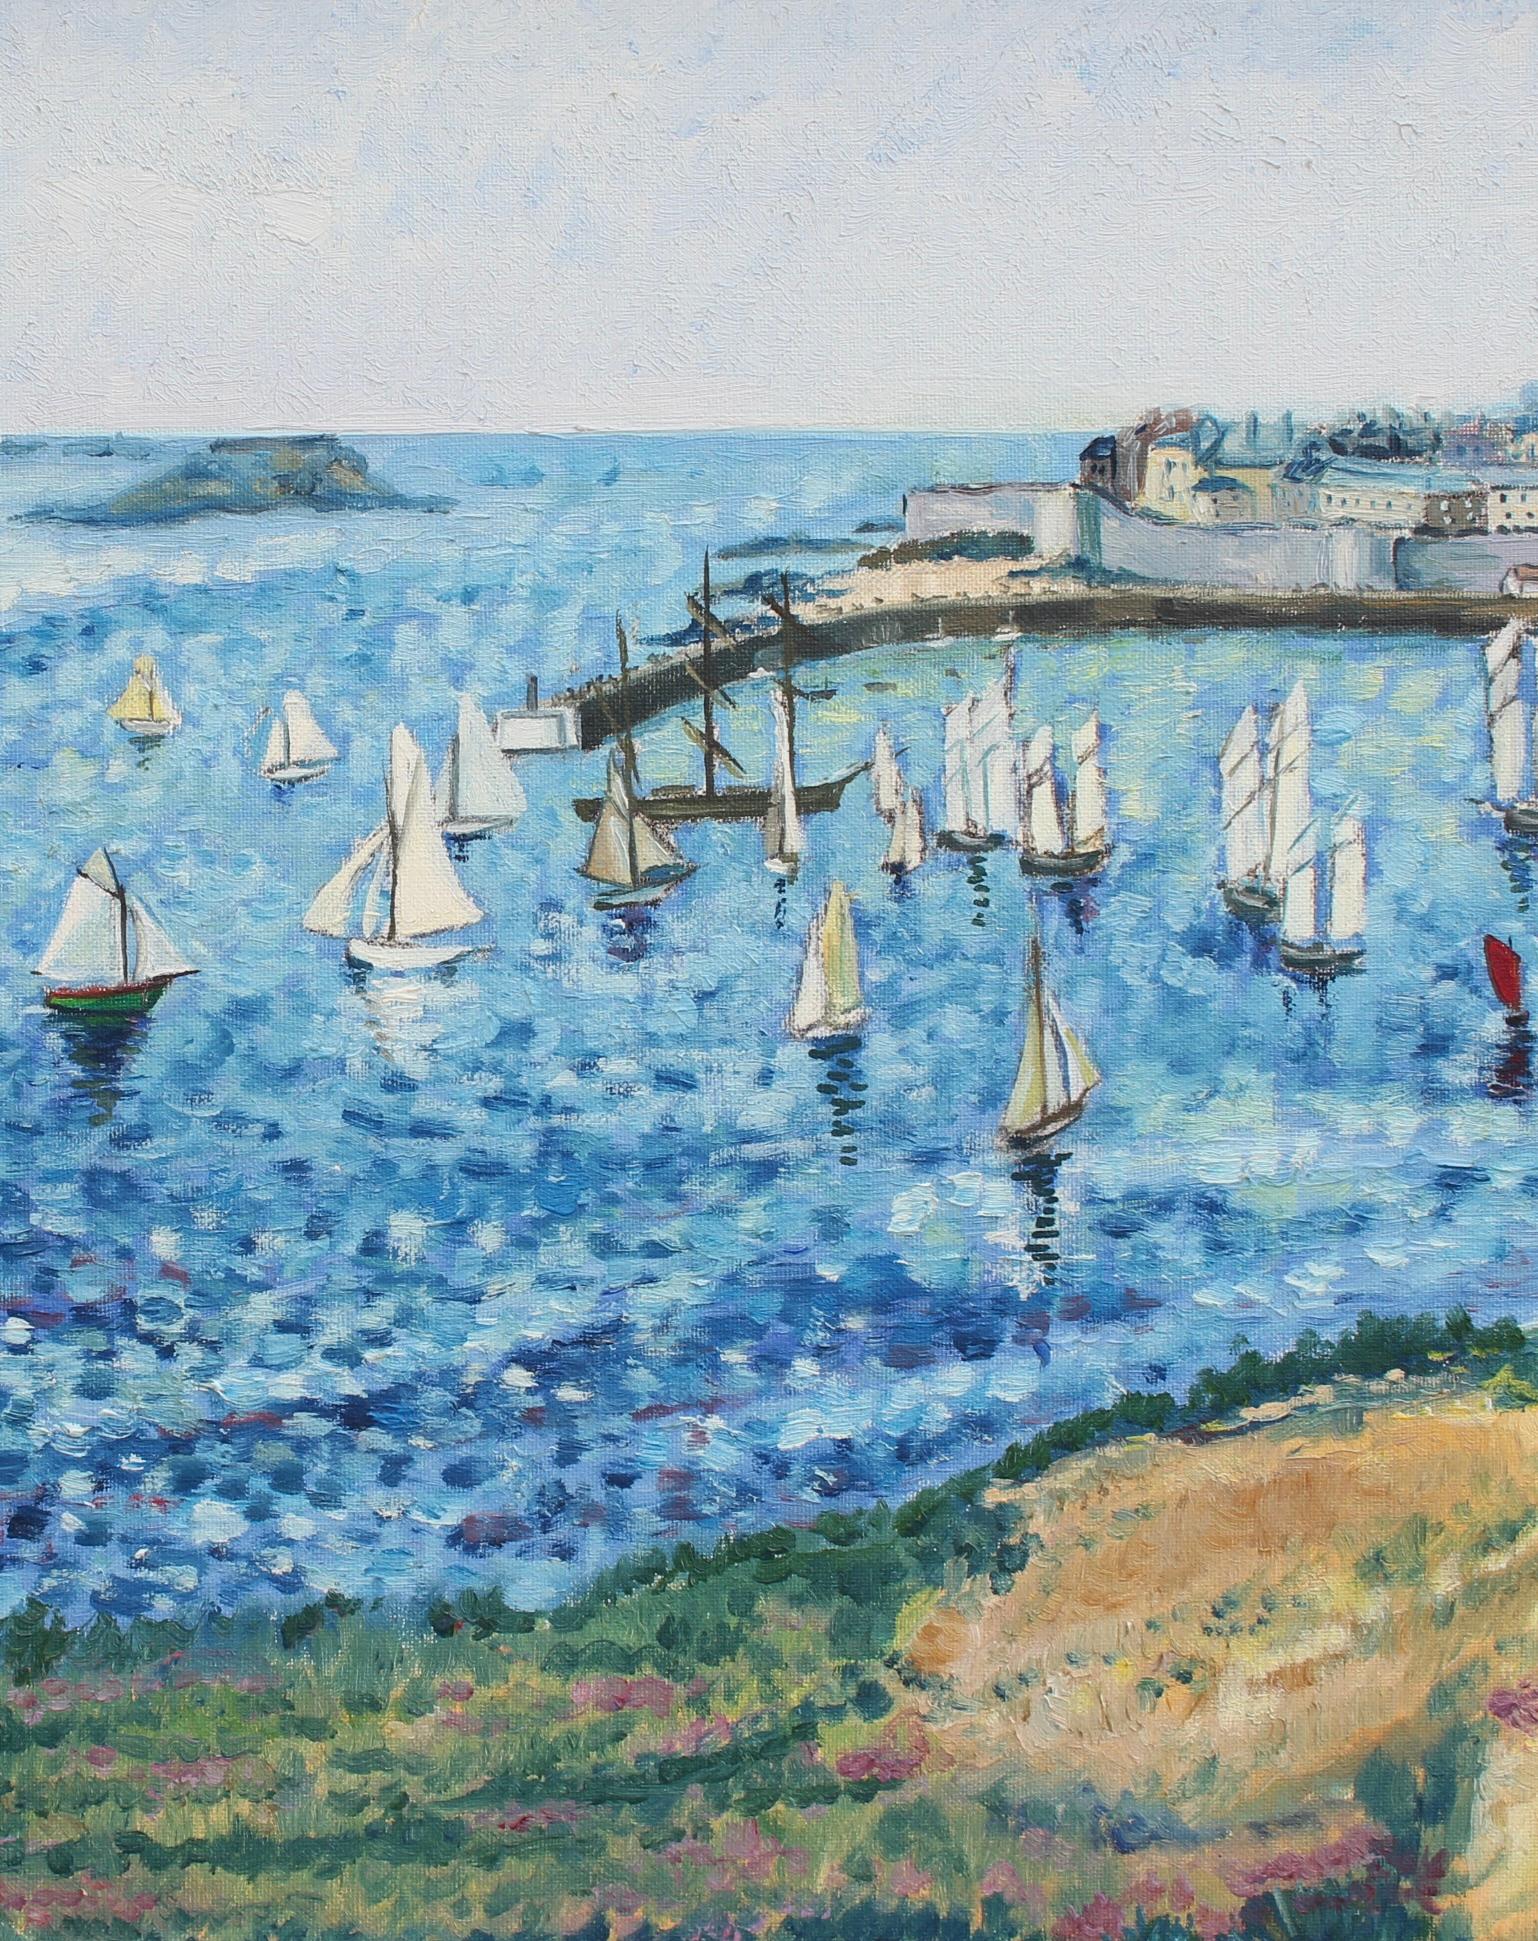 'Port de Saint-Malo', huile sur toile apposée sur carton, École moderne française (1984). Bien que l'artiste ait daté ce tableau de 84, il dépeint une vue nostalgique du port de Saint-Malo, en Bretagne, en 1884, à en juger par les vêtements portés